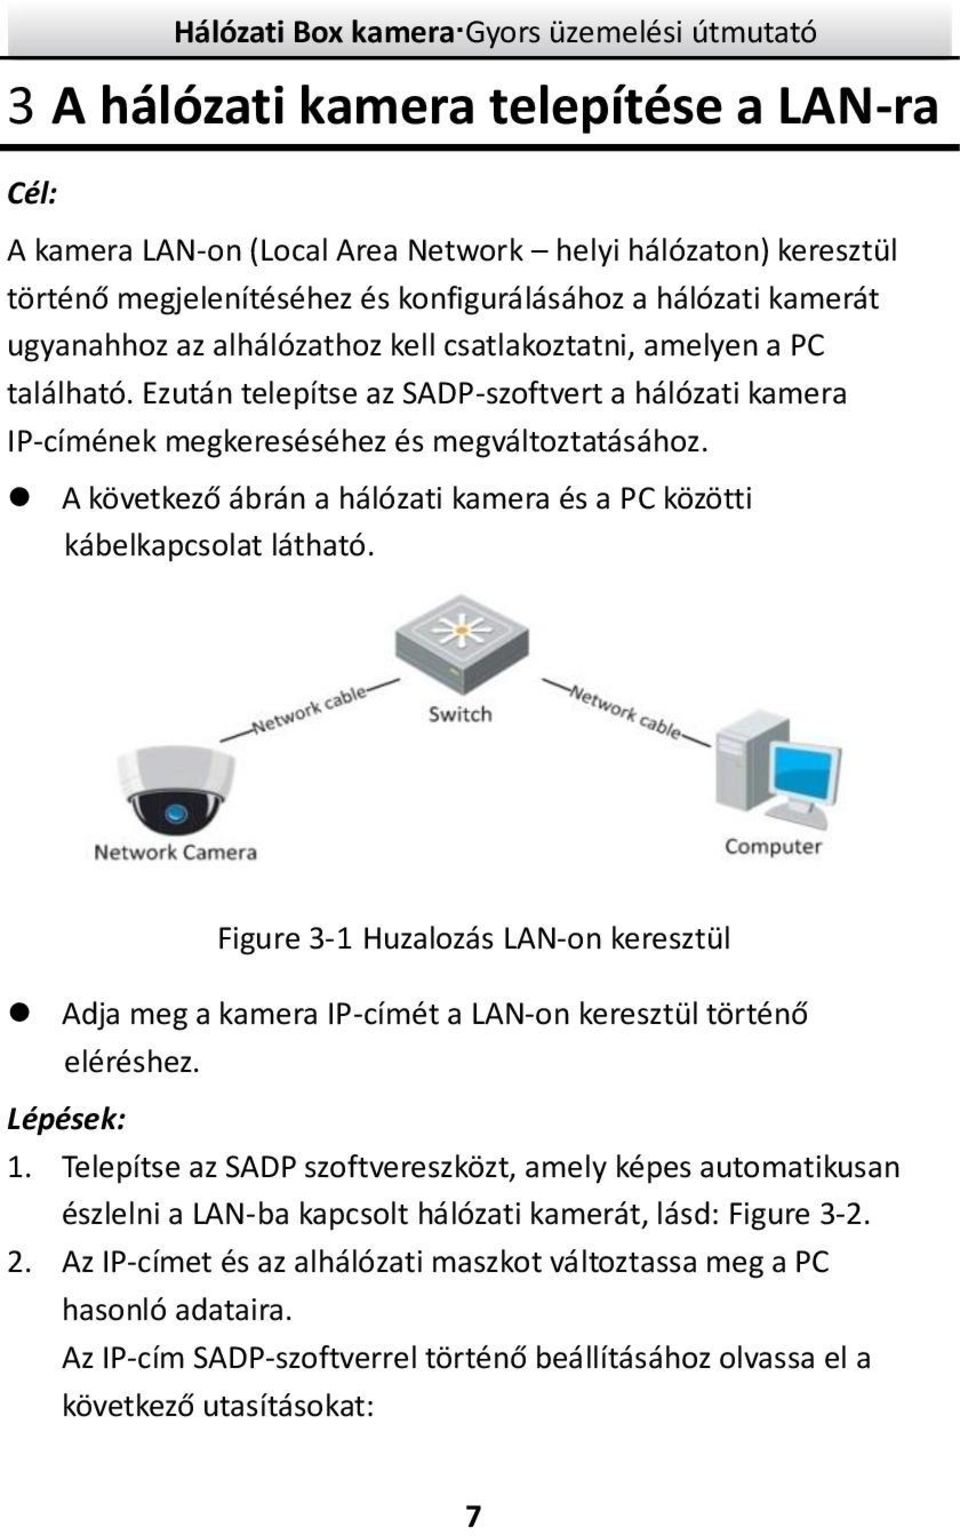 A következő ábrán a hálózati kamera és a PC közötti kábelkapcsolat látható. Figure 3-1 Huzalozás LAN-on keresztül Adja meg a kamera IP-címét a LAN-on keresztül történő eléréshez. Lépések: 1.